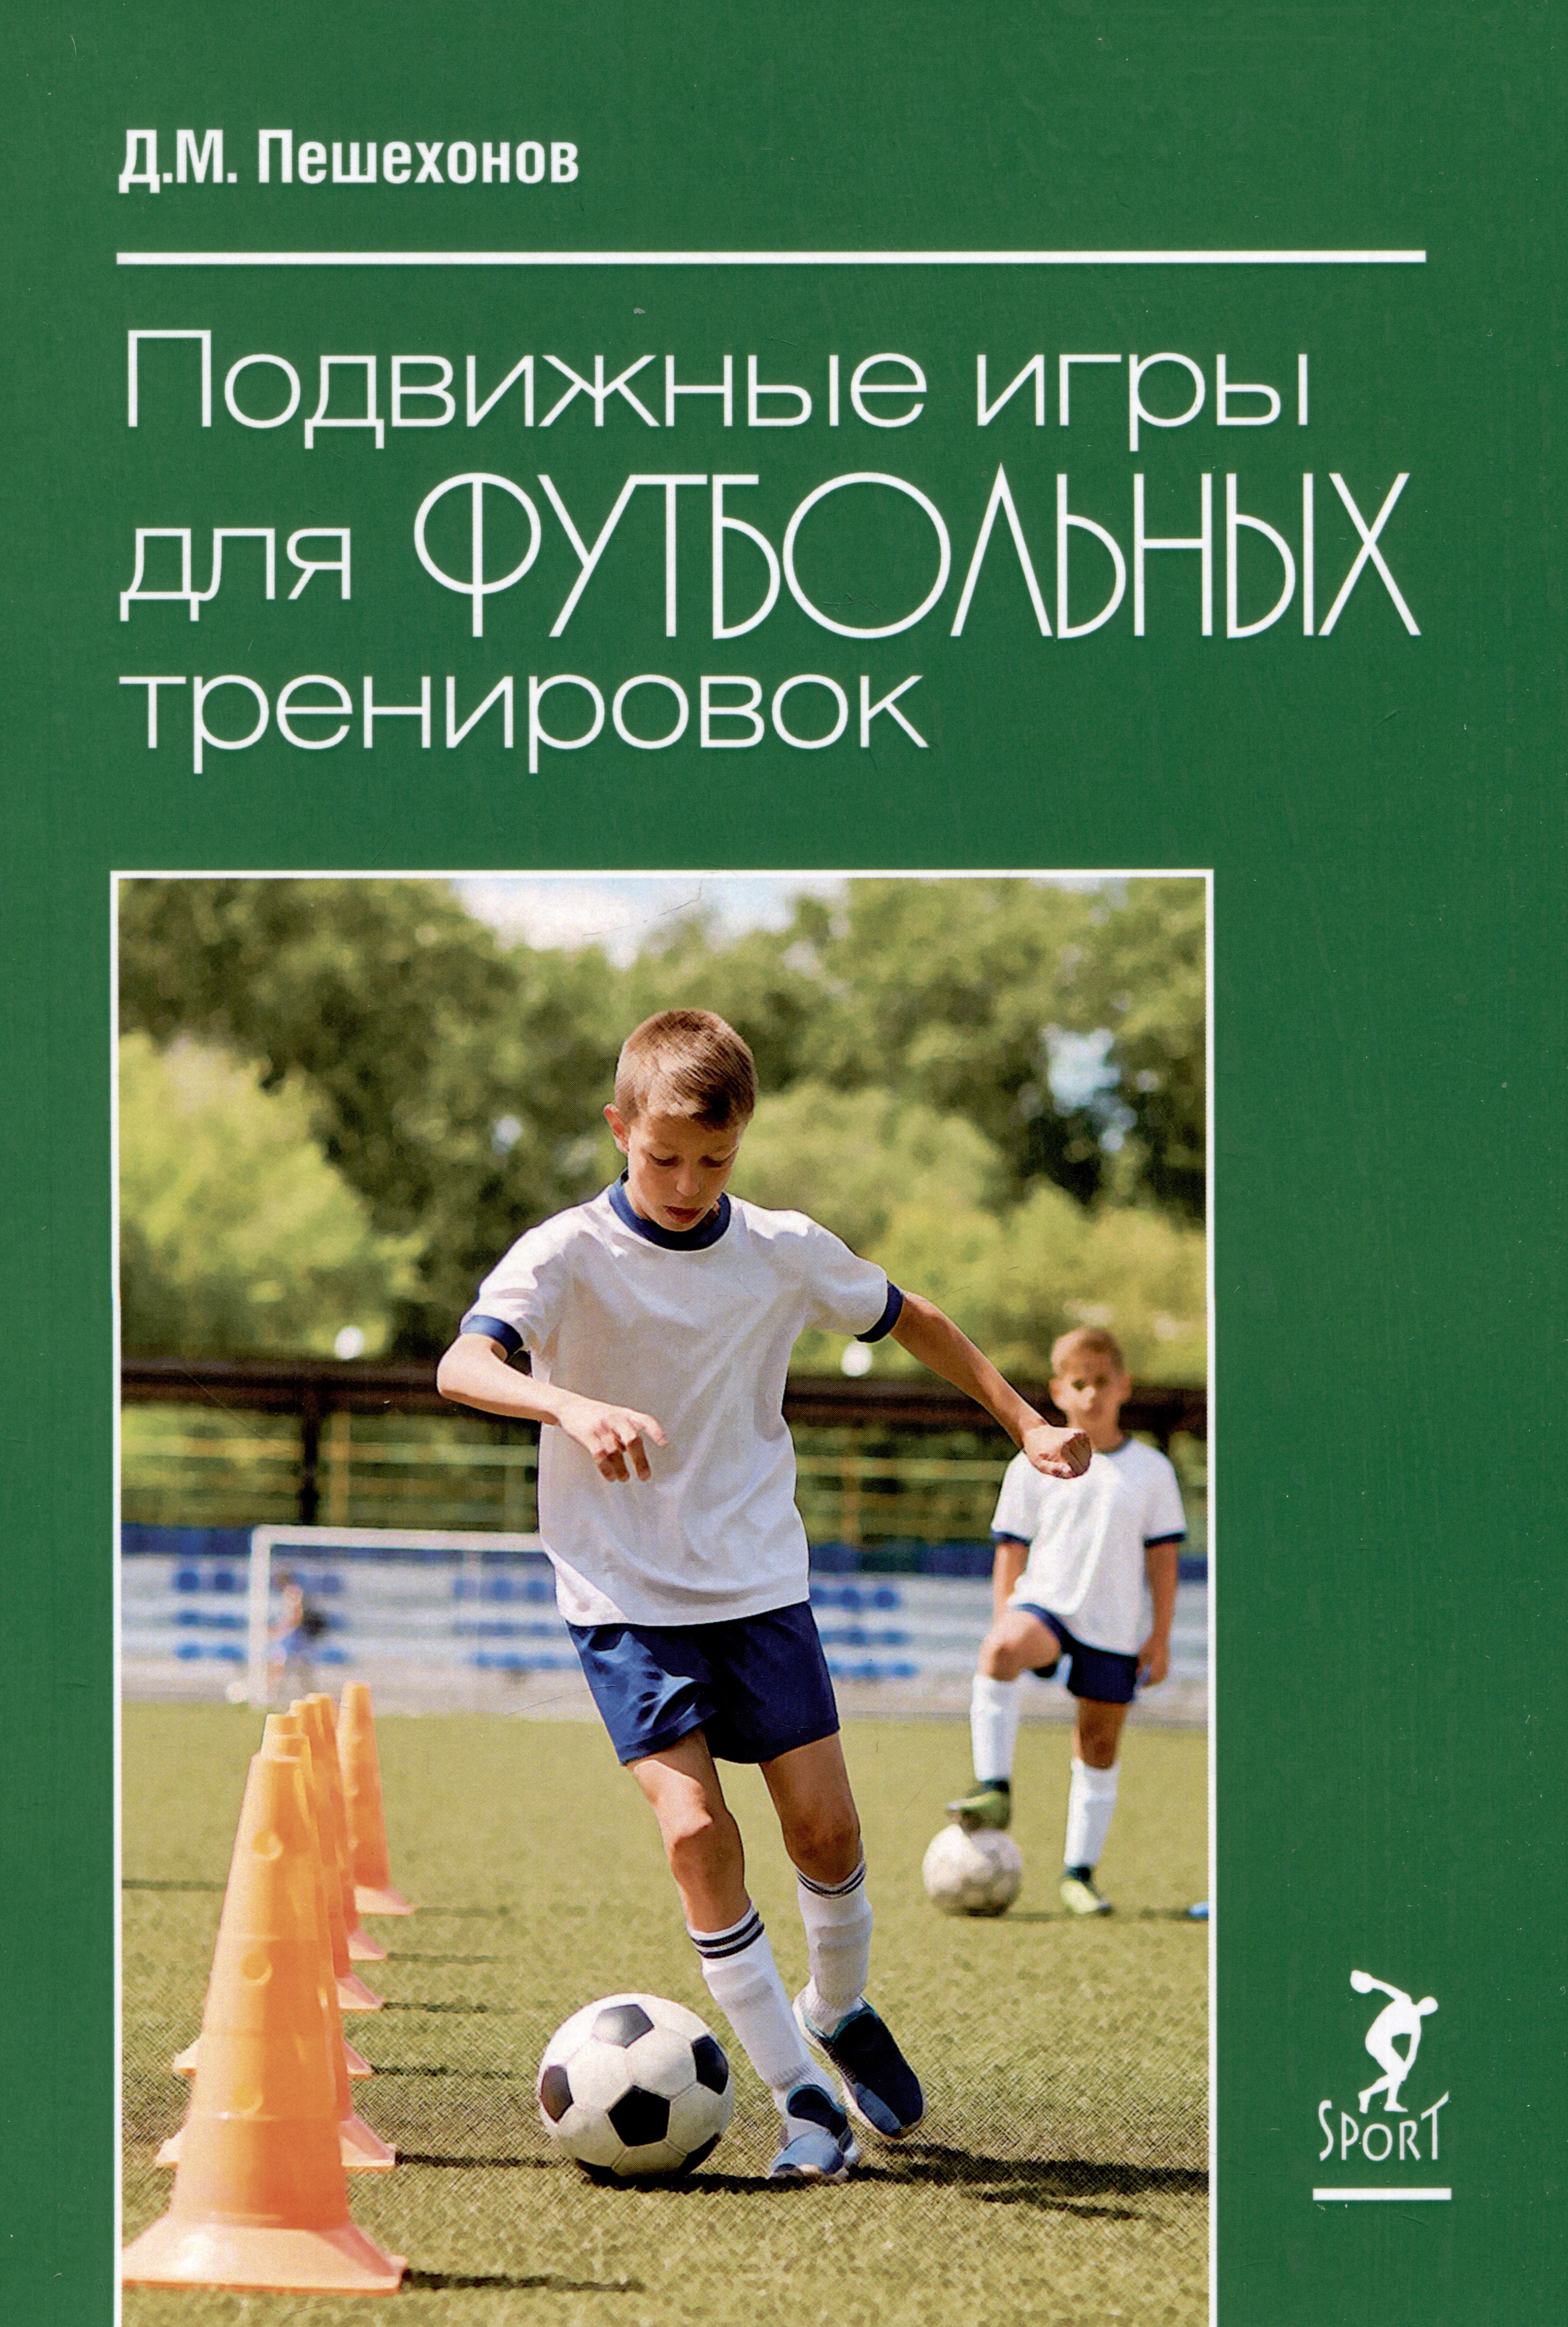 пешехонов дмитрий михайлович подвижные игры для футбольных тренировок Подвижные игры для футбольных тренировок